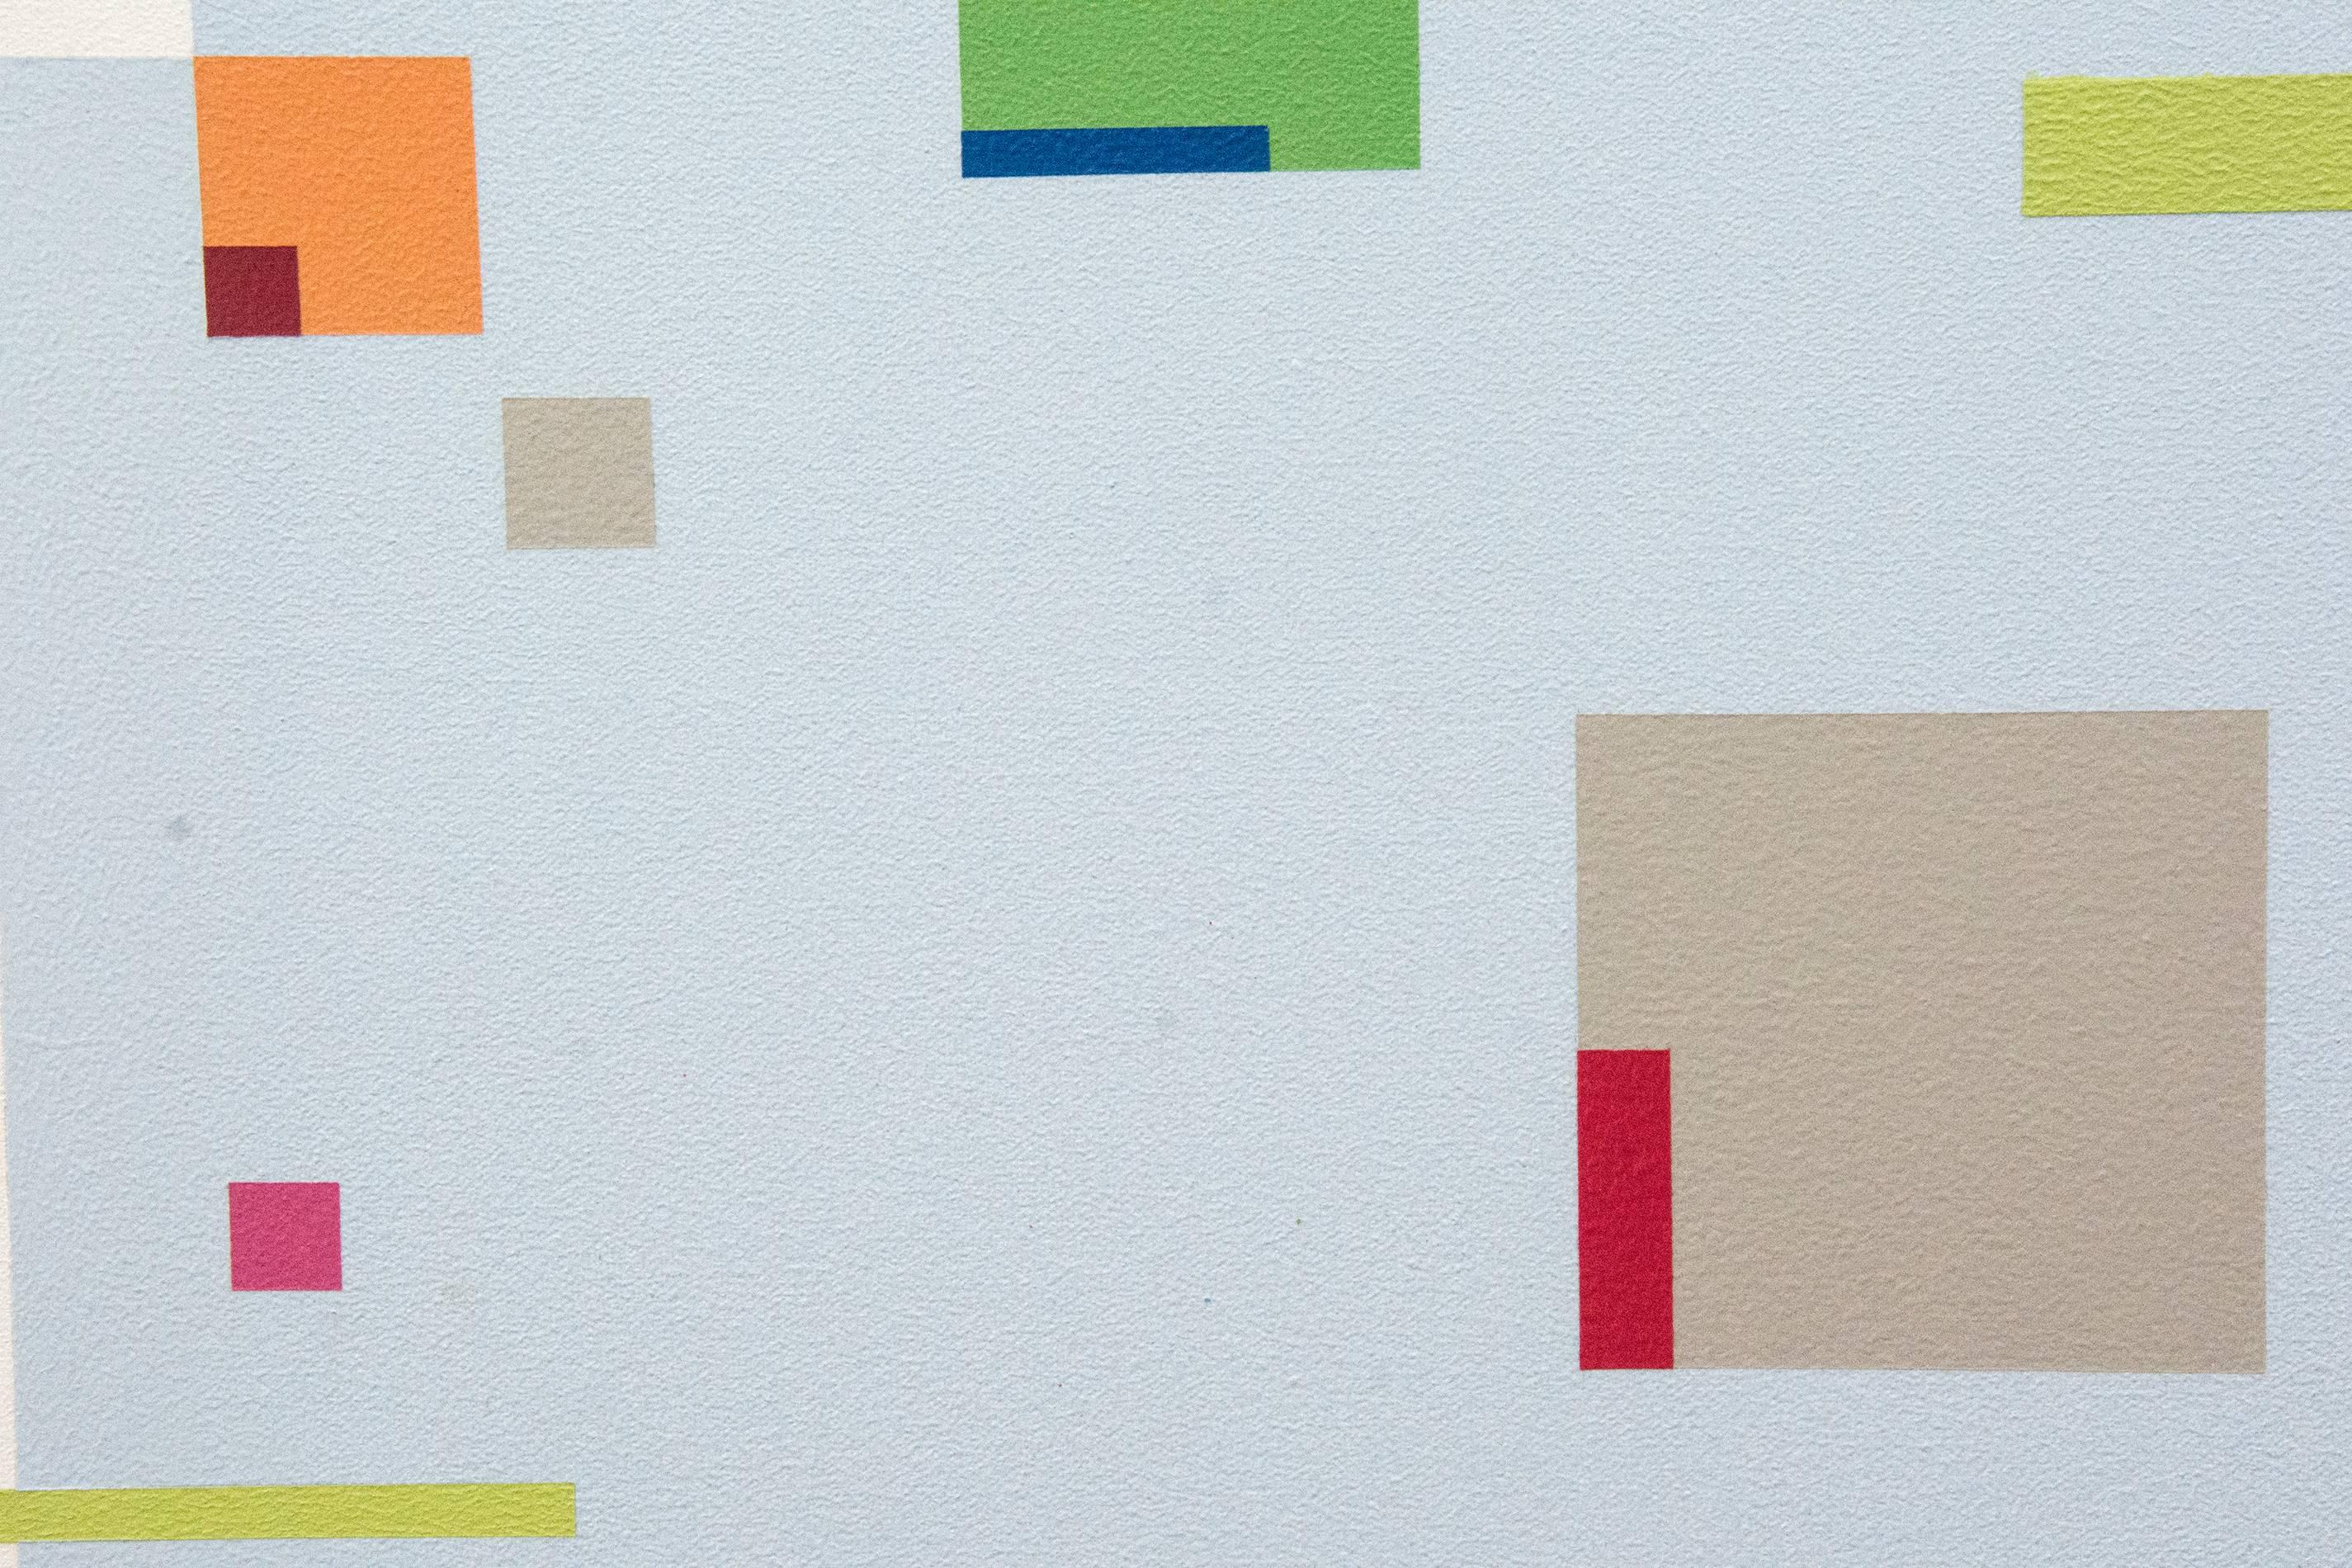 Große und kleine Rechtecke und Quadrate in Grau, Grün, Rot, Blau und Orange tanzen auf dieser Leinwand von Burton Kramer über ein Orthogonal aus Hellblau auf weißem Grund. Der Titel des Gemäldes bezieht sich auf den elektronischen Synthesizer Moog,